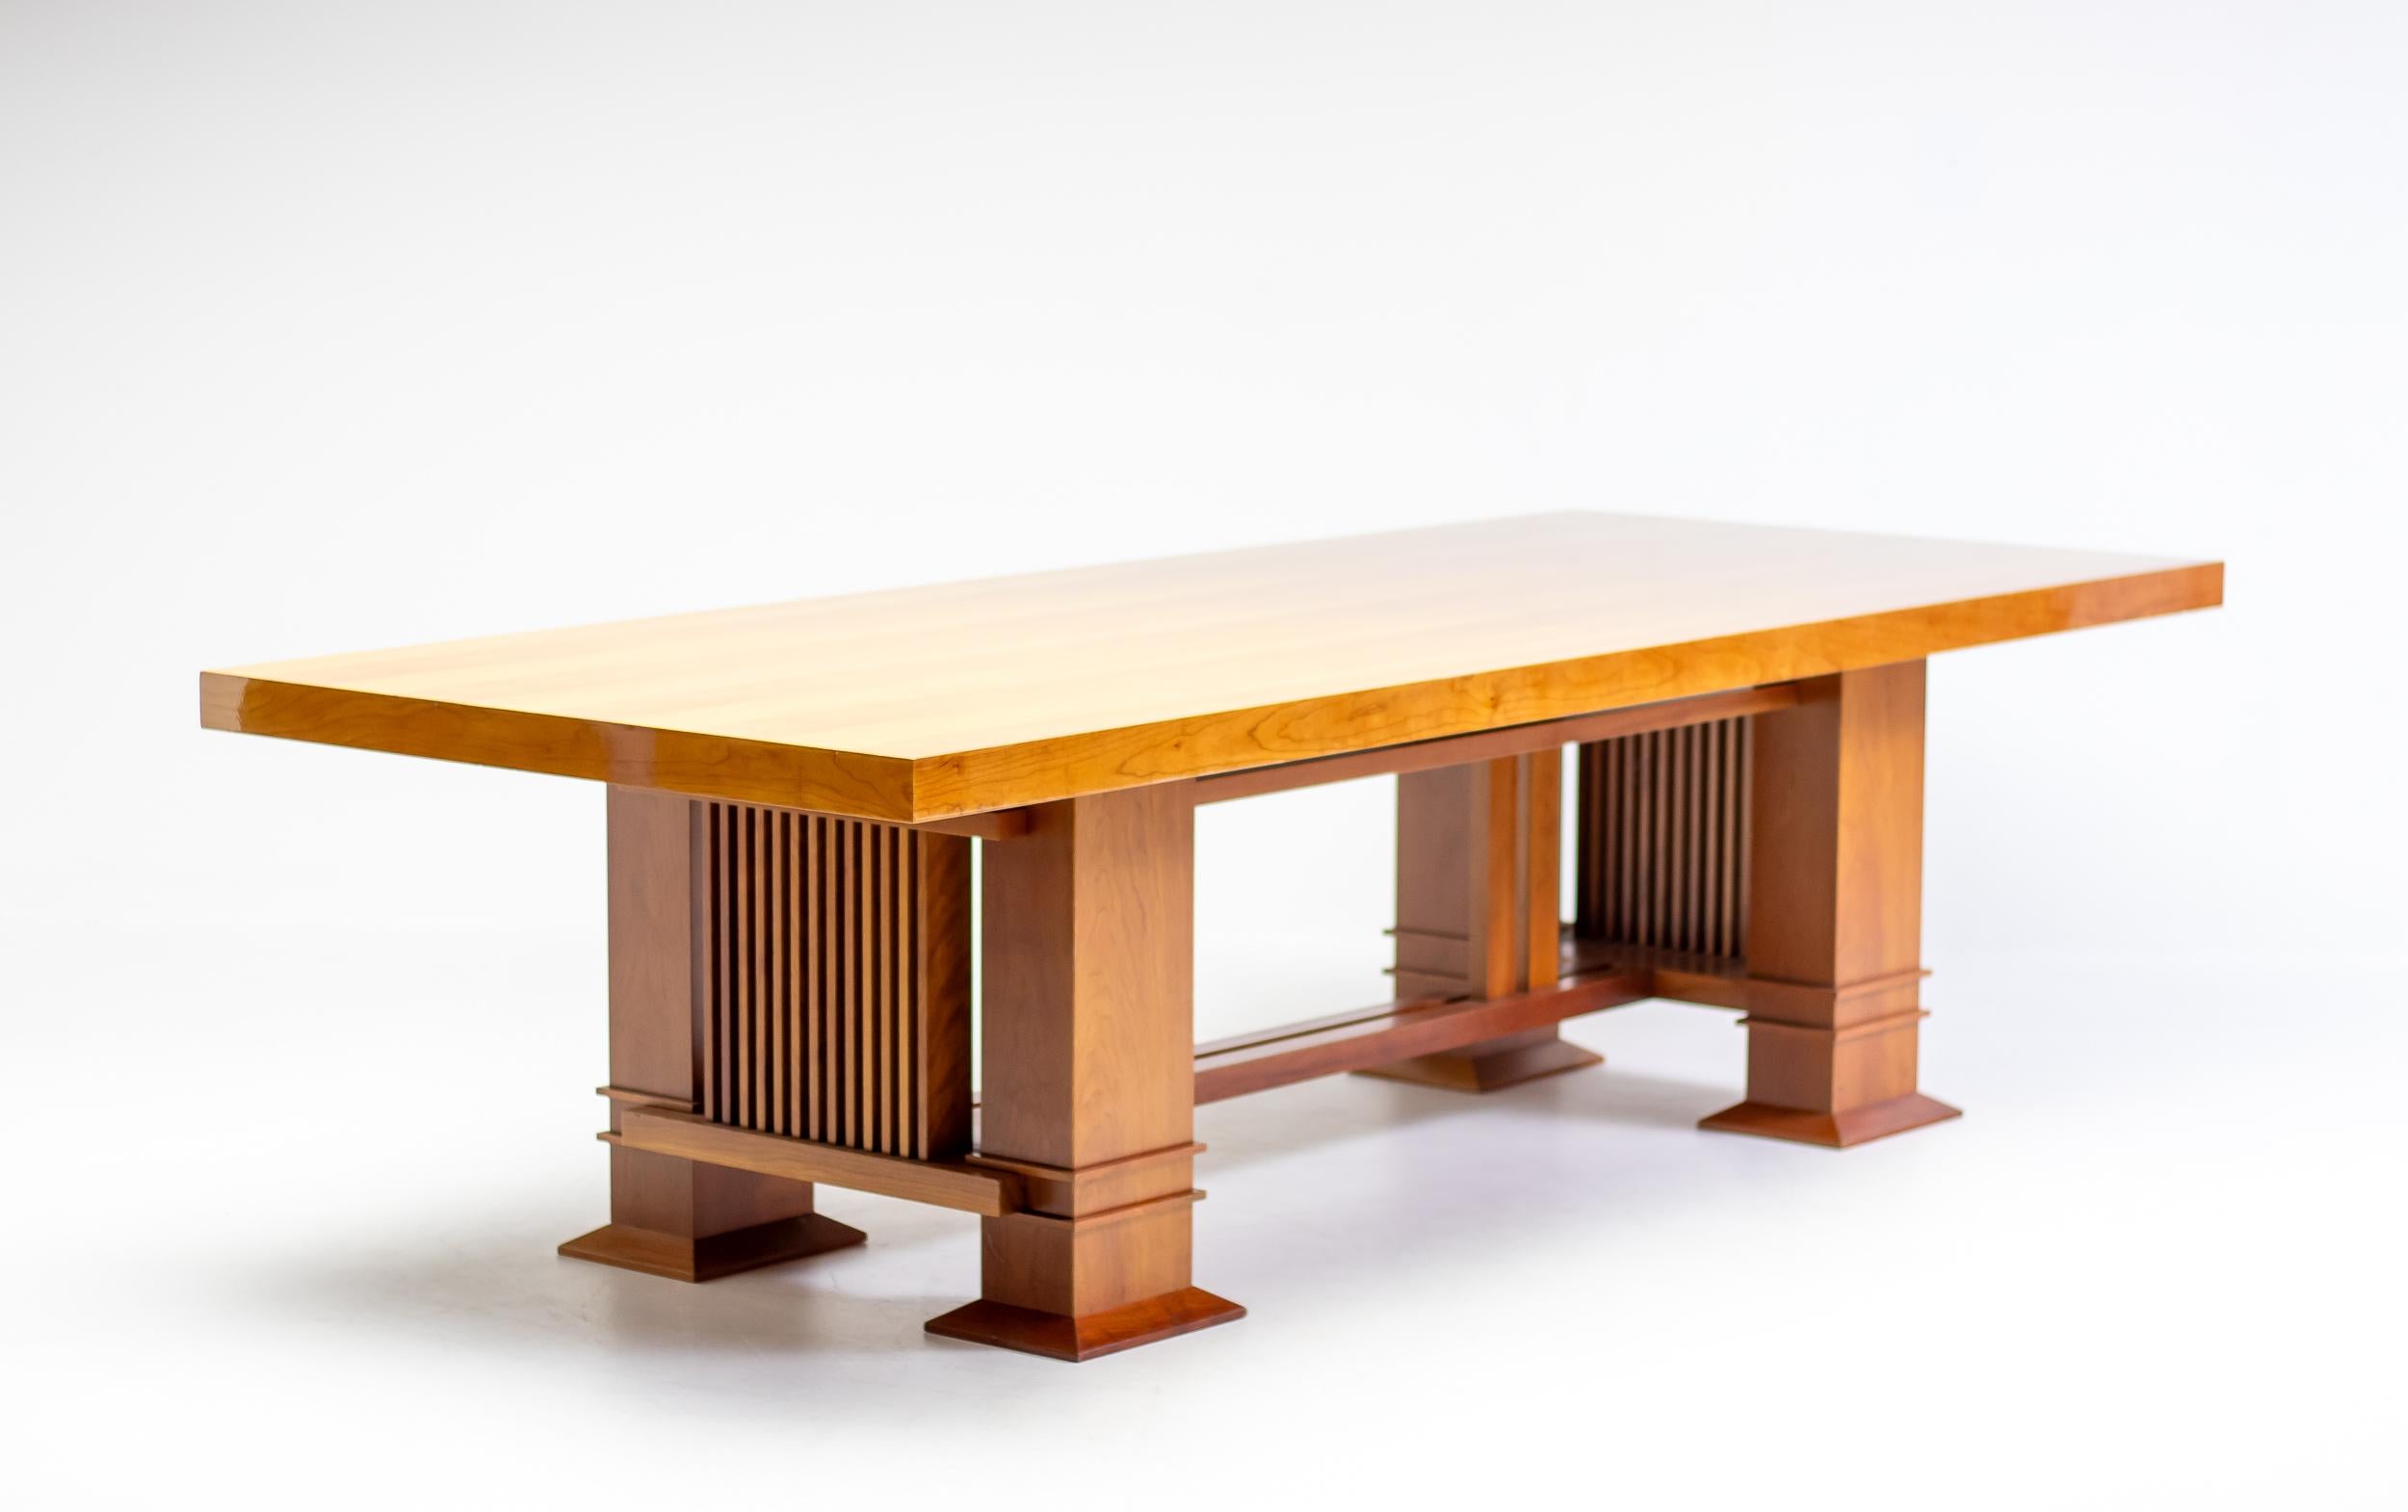 Rare table 605 Allen en merisier, conçue en 1917 par Frank Lloyd Wright et fabriquée par Cassina.
Marquée du cachet Cassina, d'un numéro de série précoce et de la signature de Frank Lloyds, réalisée au cours de la première année de production, en